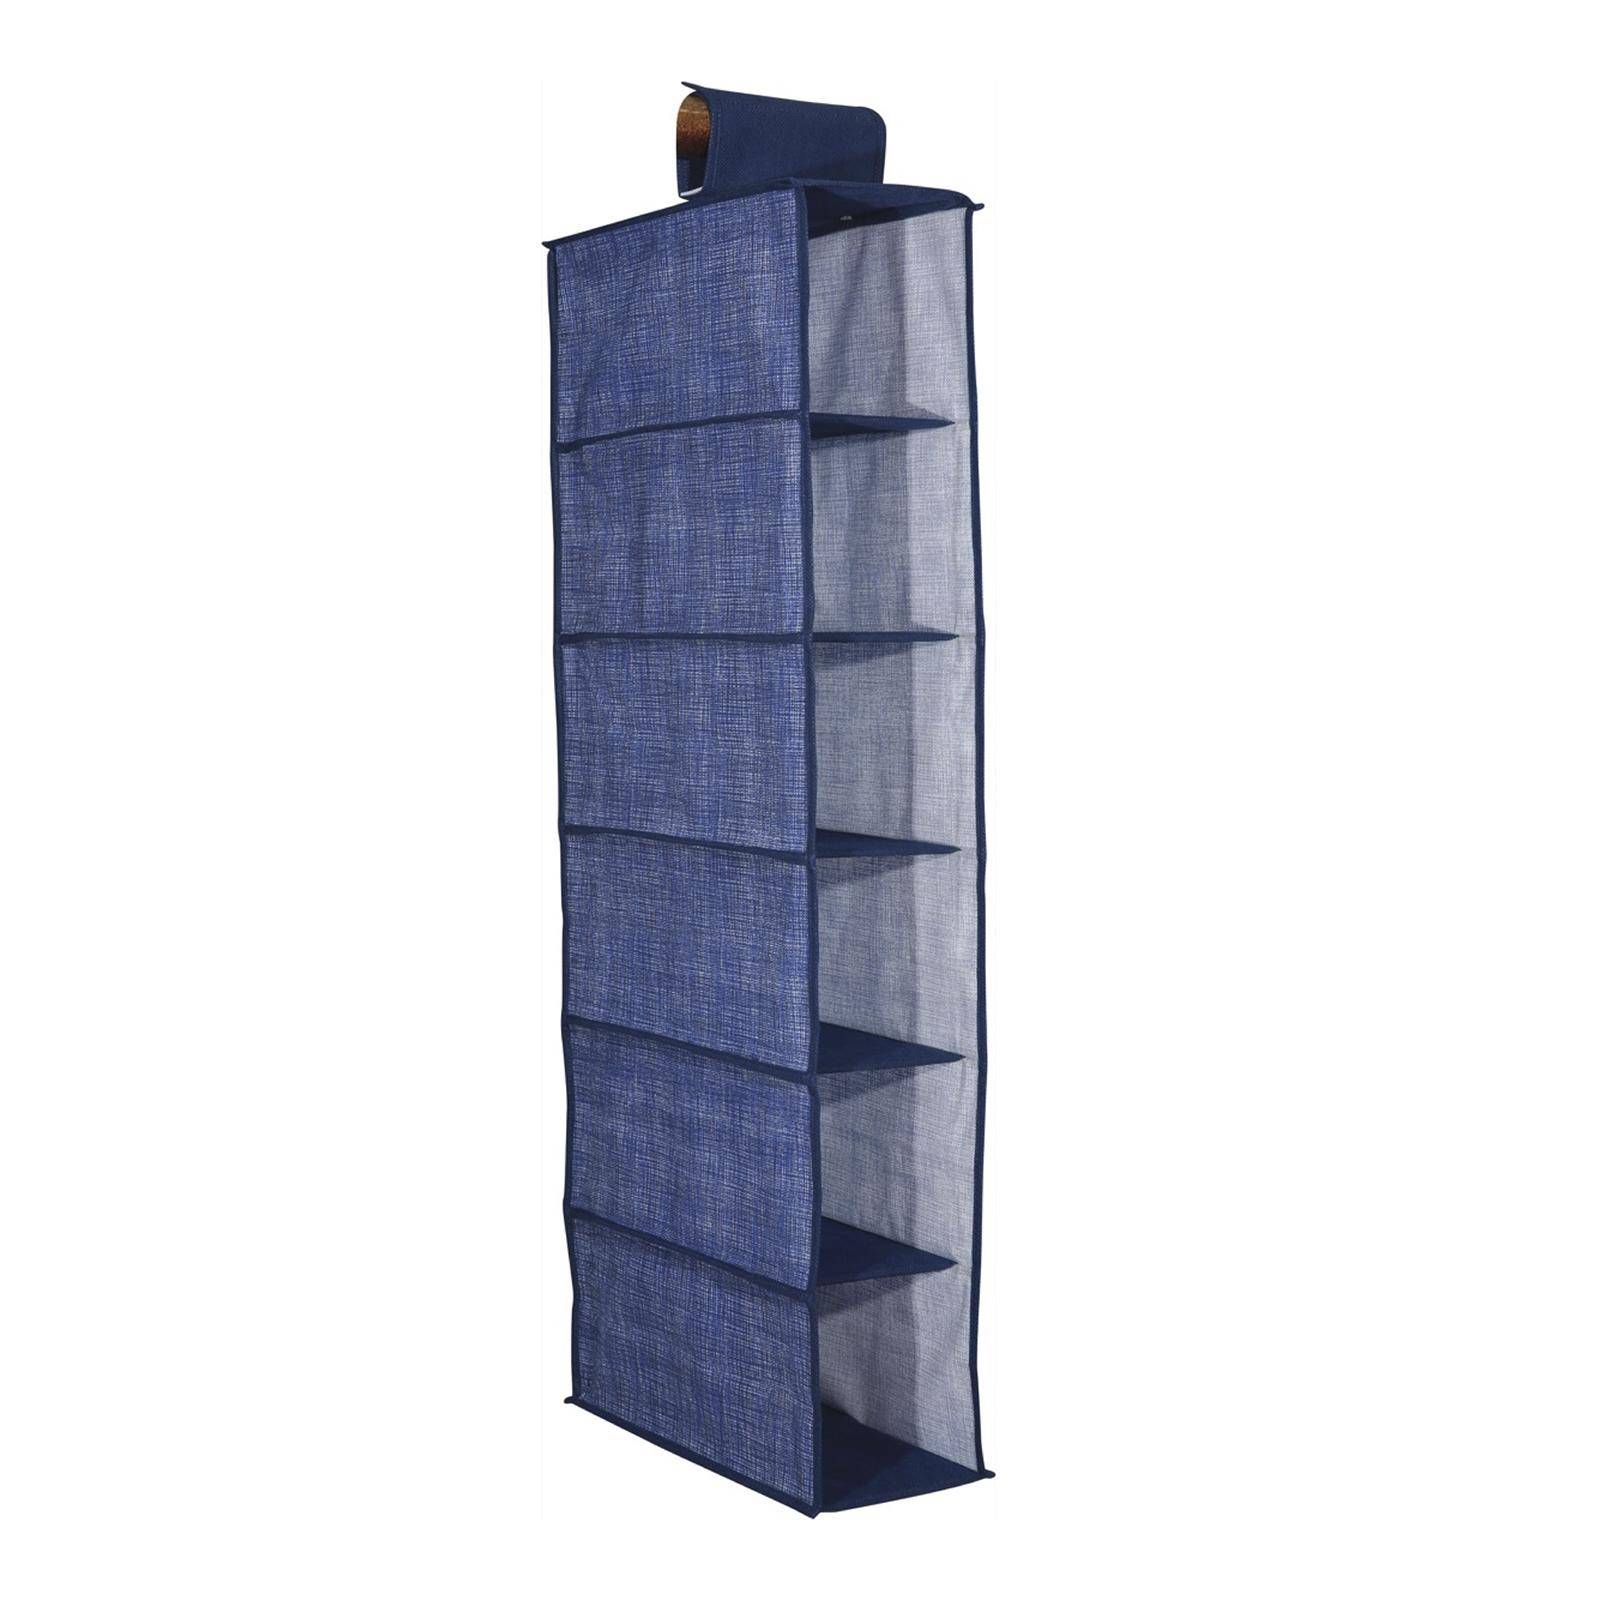 Organizzatore armadio con 6 ripiani profondità 15 cm tessuto blu jeans